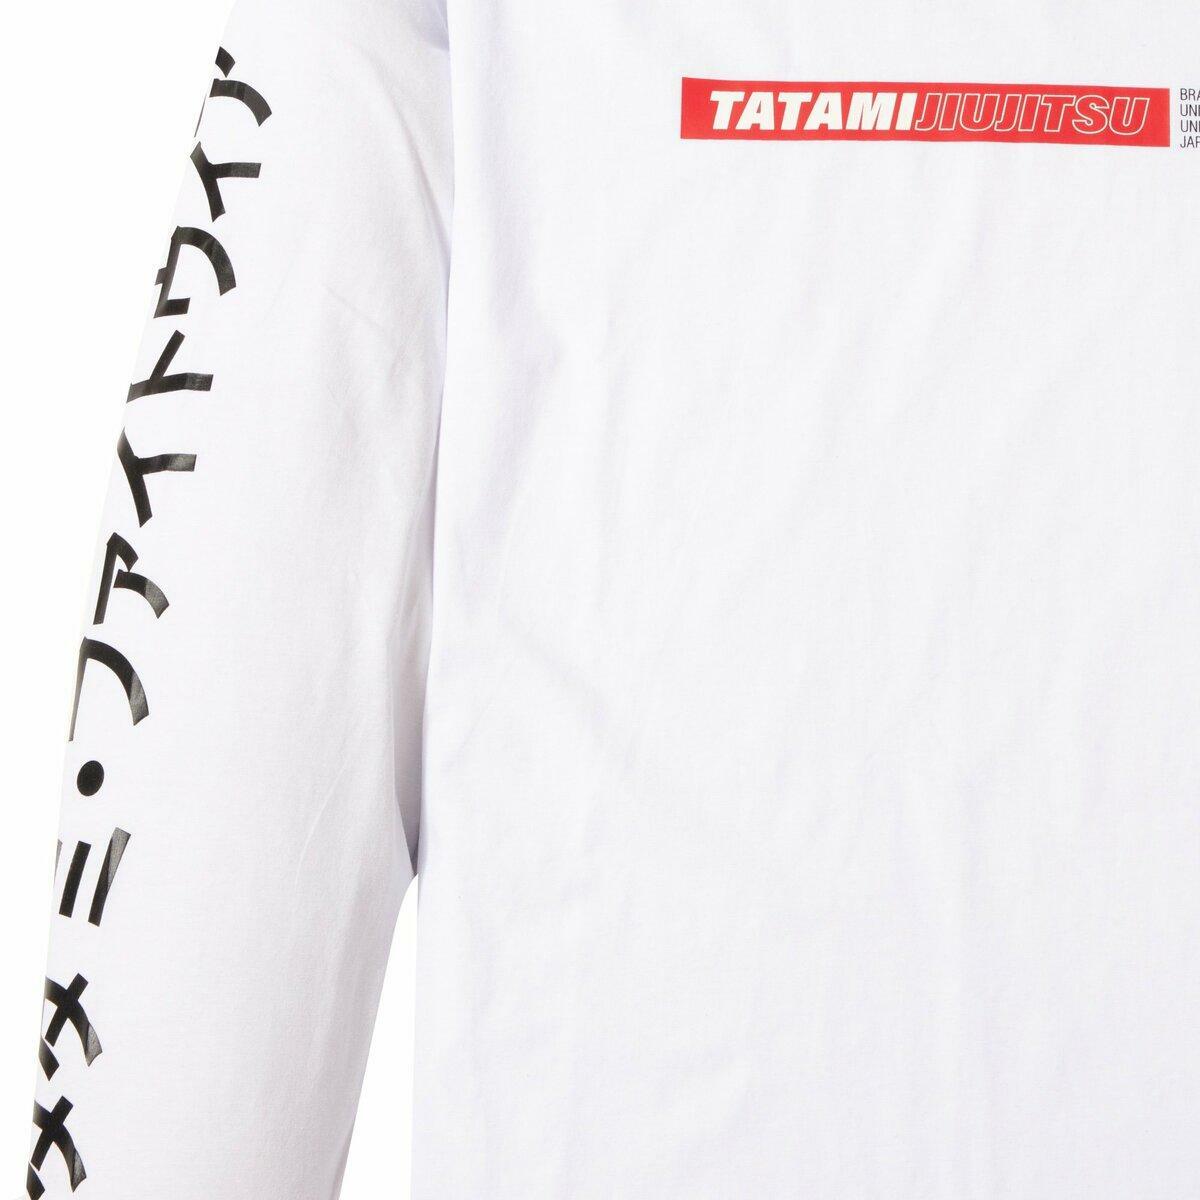 Tatami Global Long Sleeve T-Shirt TATT1067